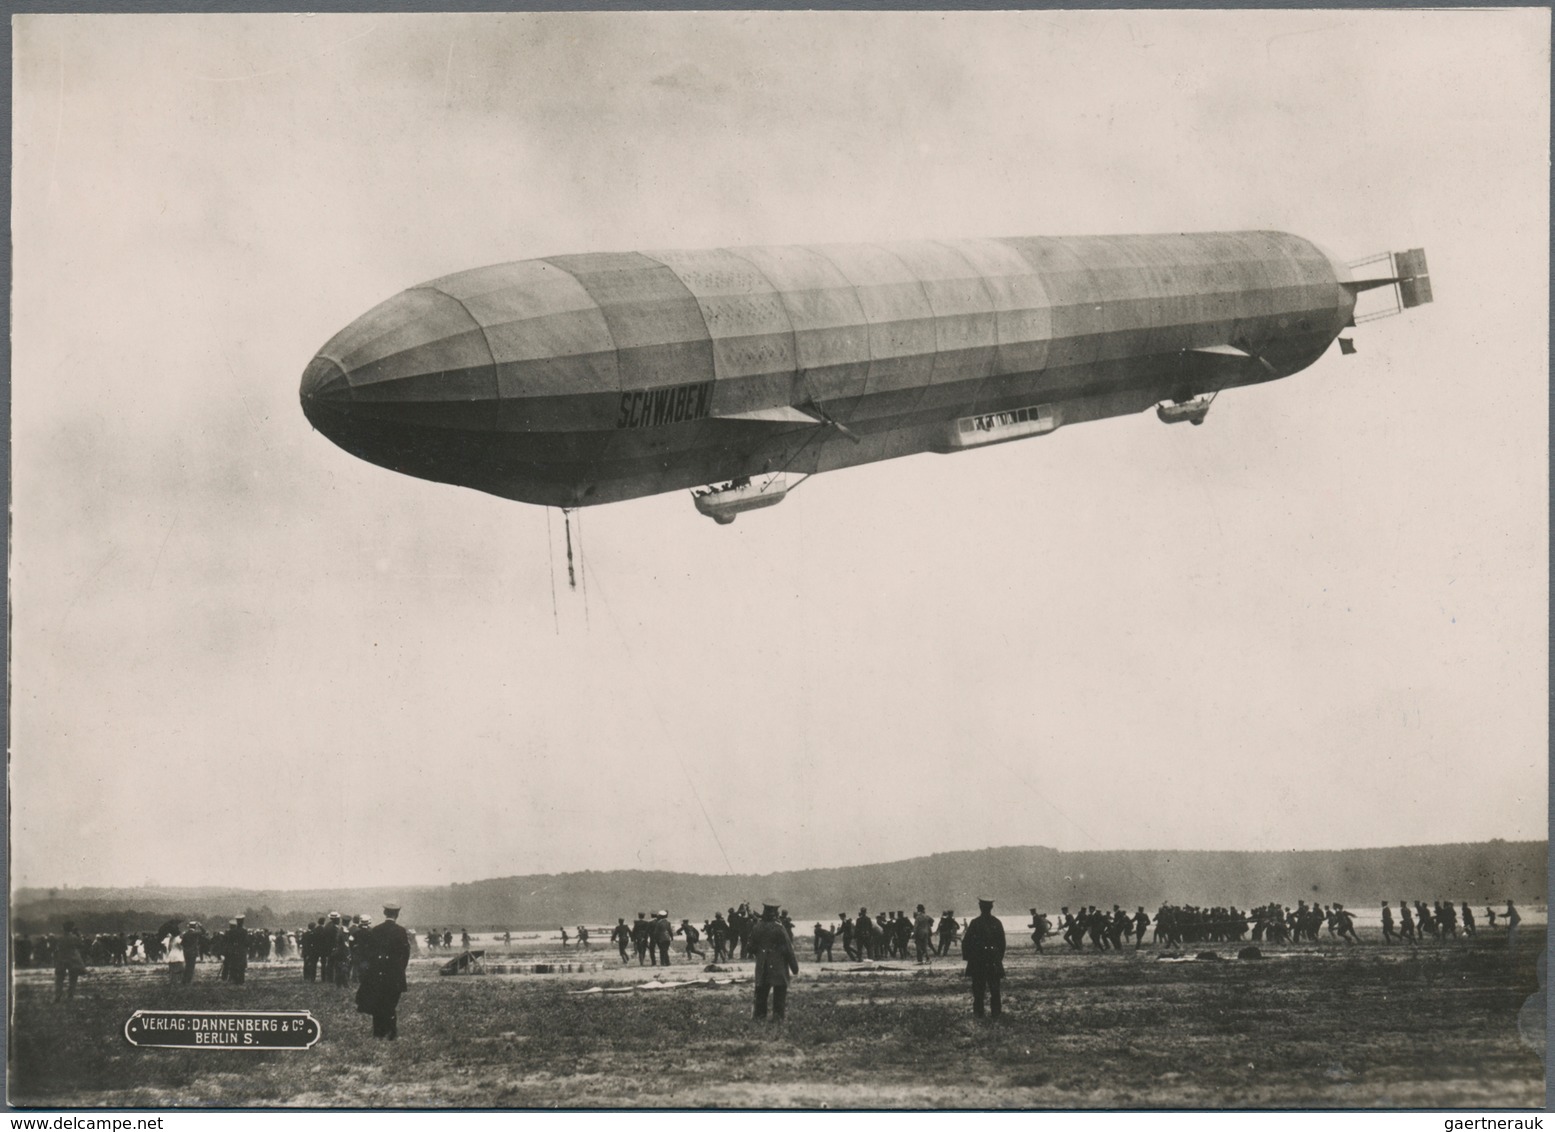 Thematik: Zeppelin / Zeppelin: 1911. Original, Period Photo Of The Pioneering Airship Schwaben In It - Zeppelines